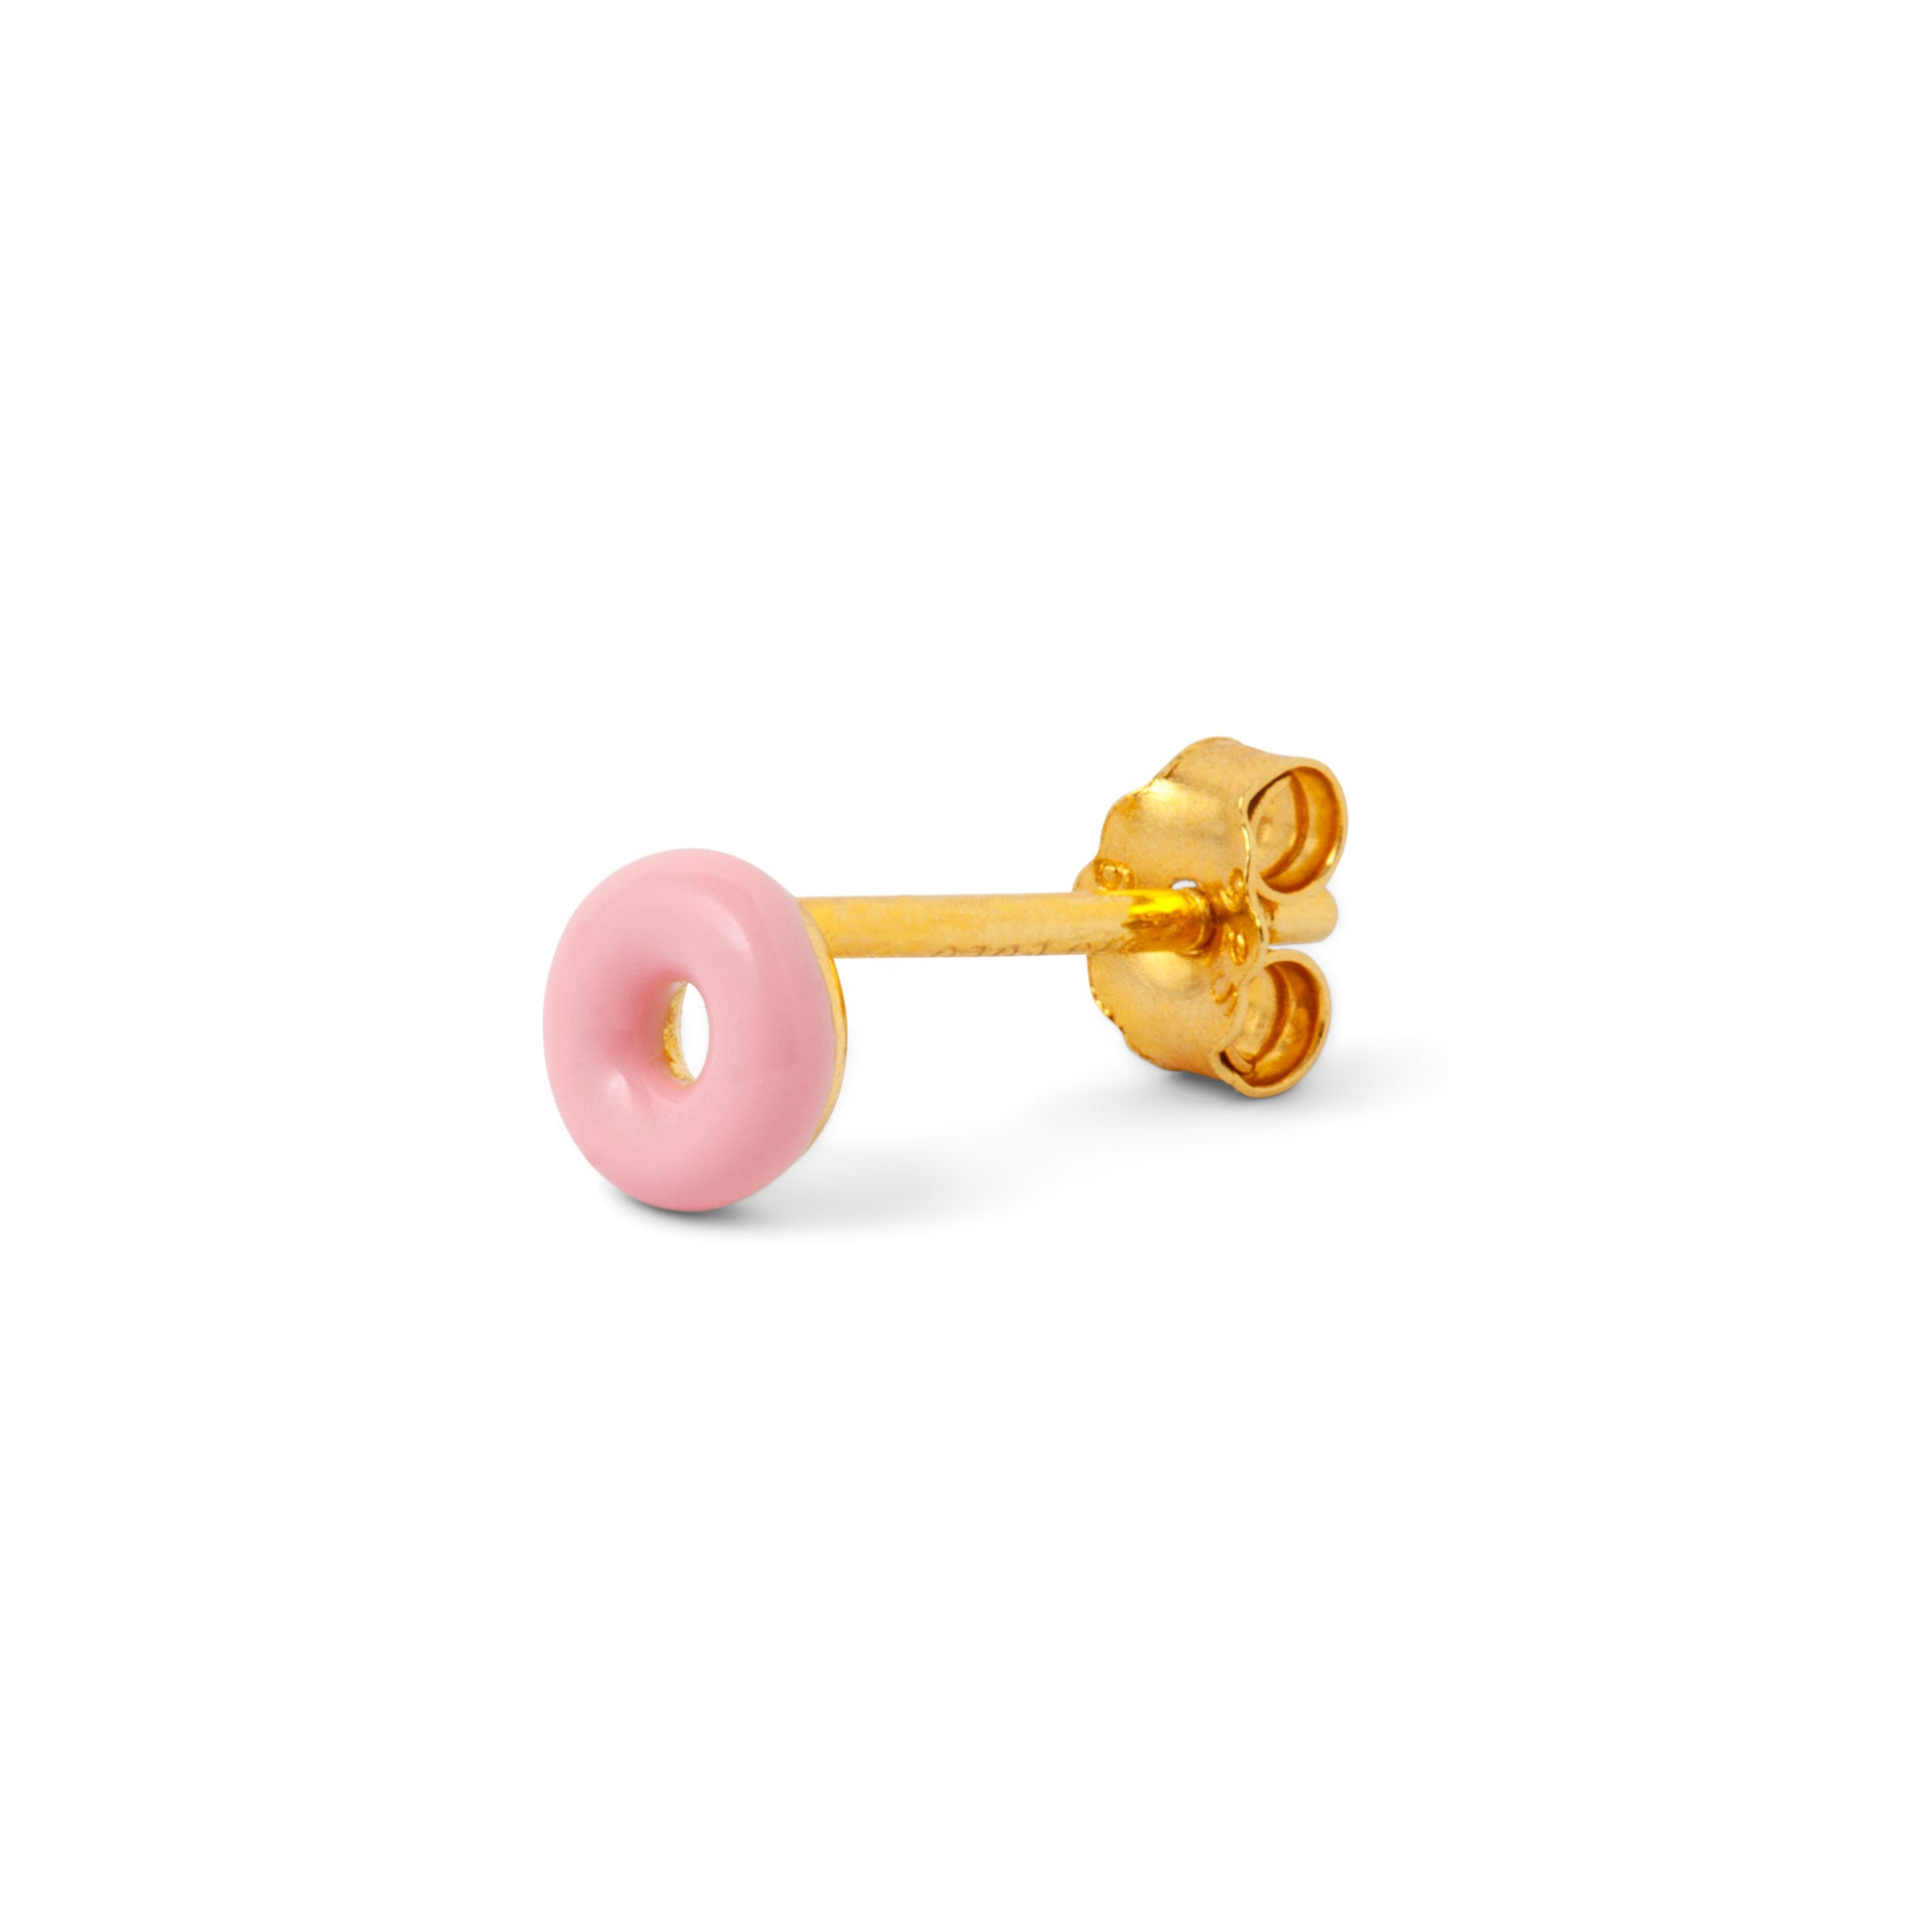 A Donut Single Stud - Light Pink earring from Lulu Copenhagen on a white background.